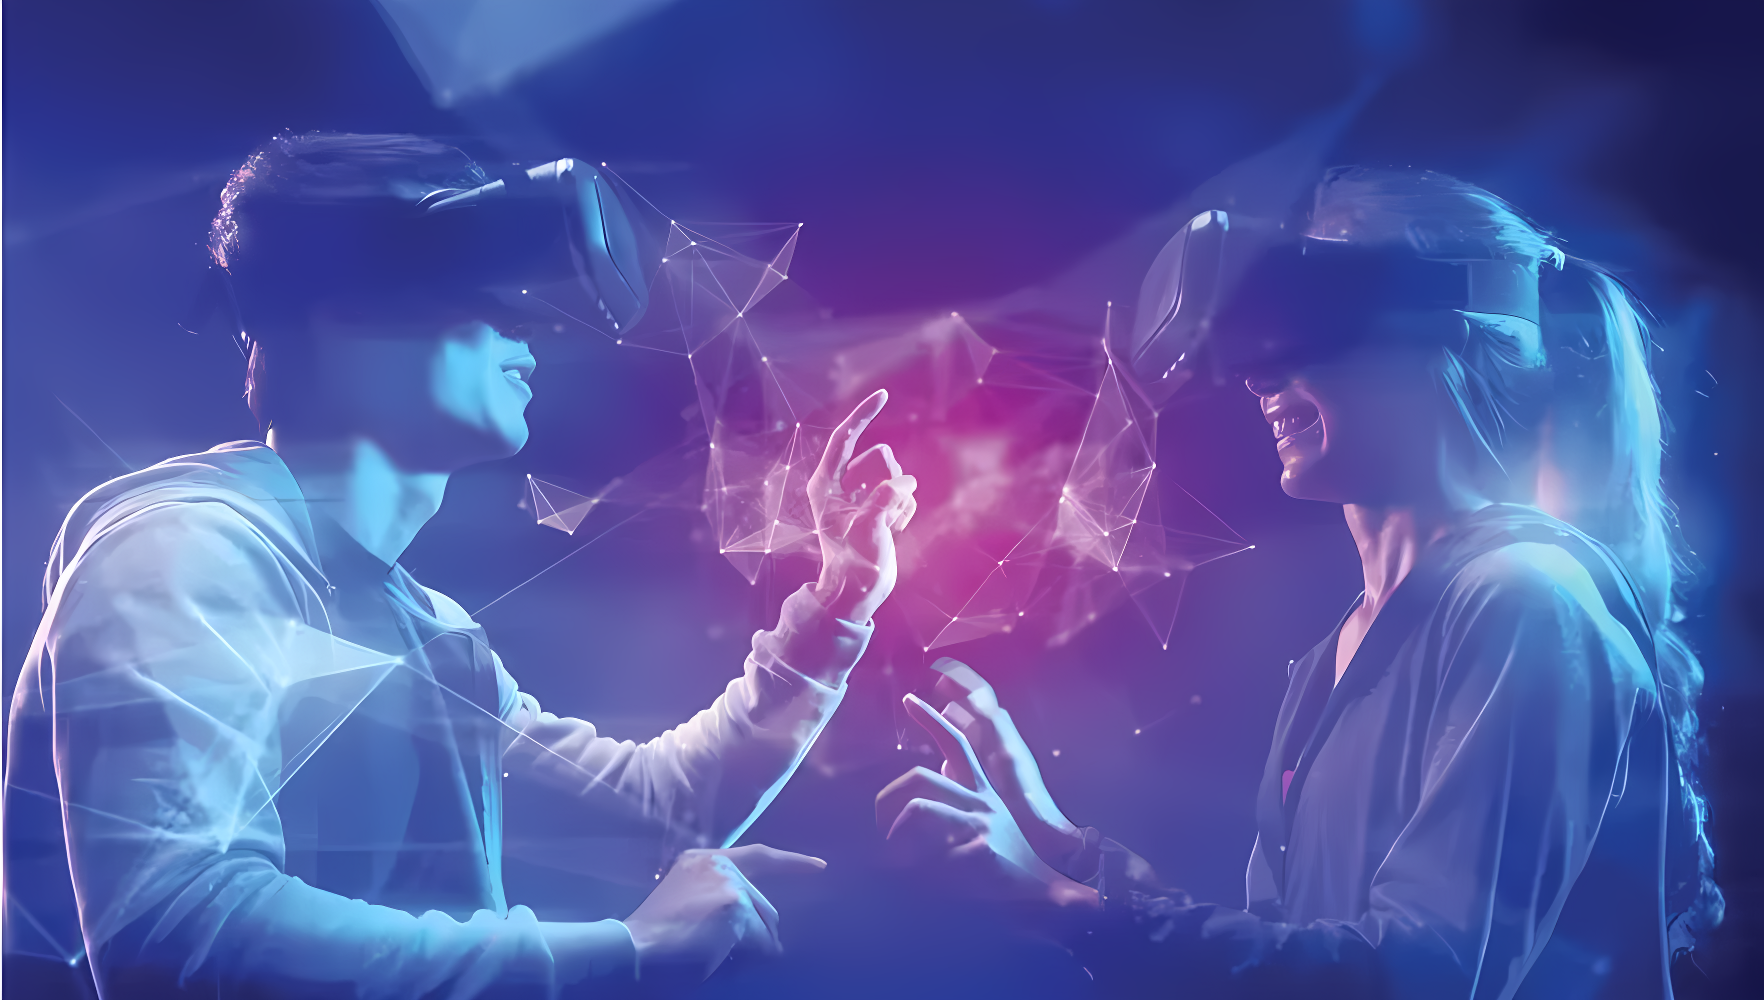 图片展示两人戴着虚拟现实头盔，似乎在虚拟空间中互动，周围有光线和数字元素，营造科技感。